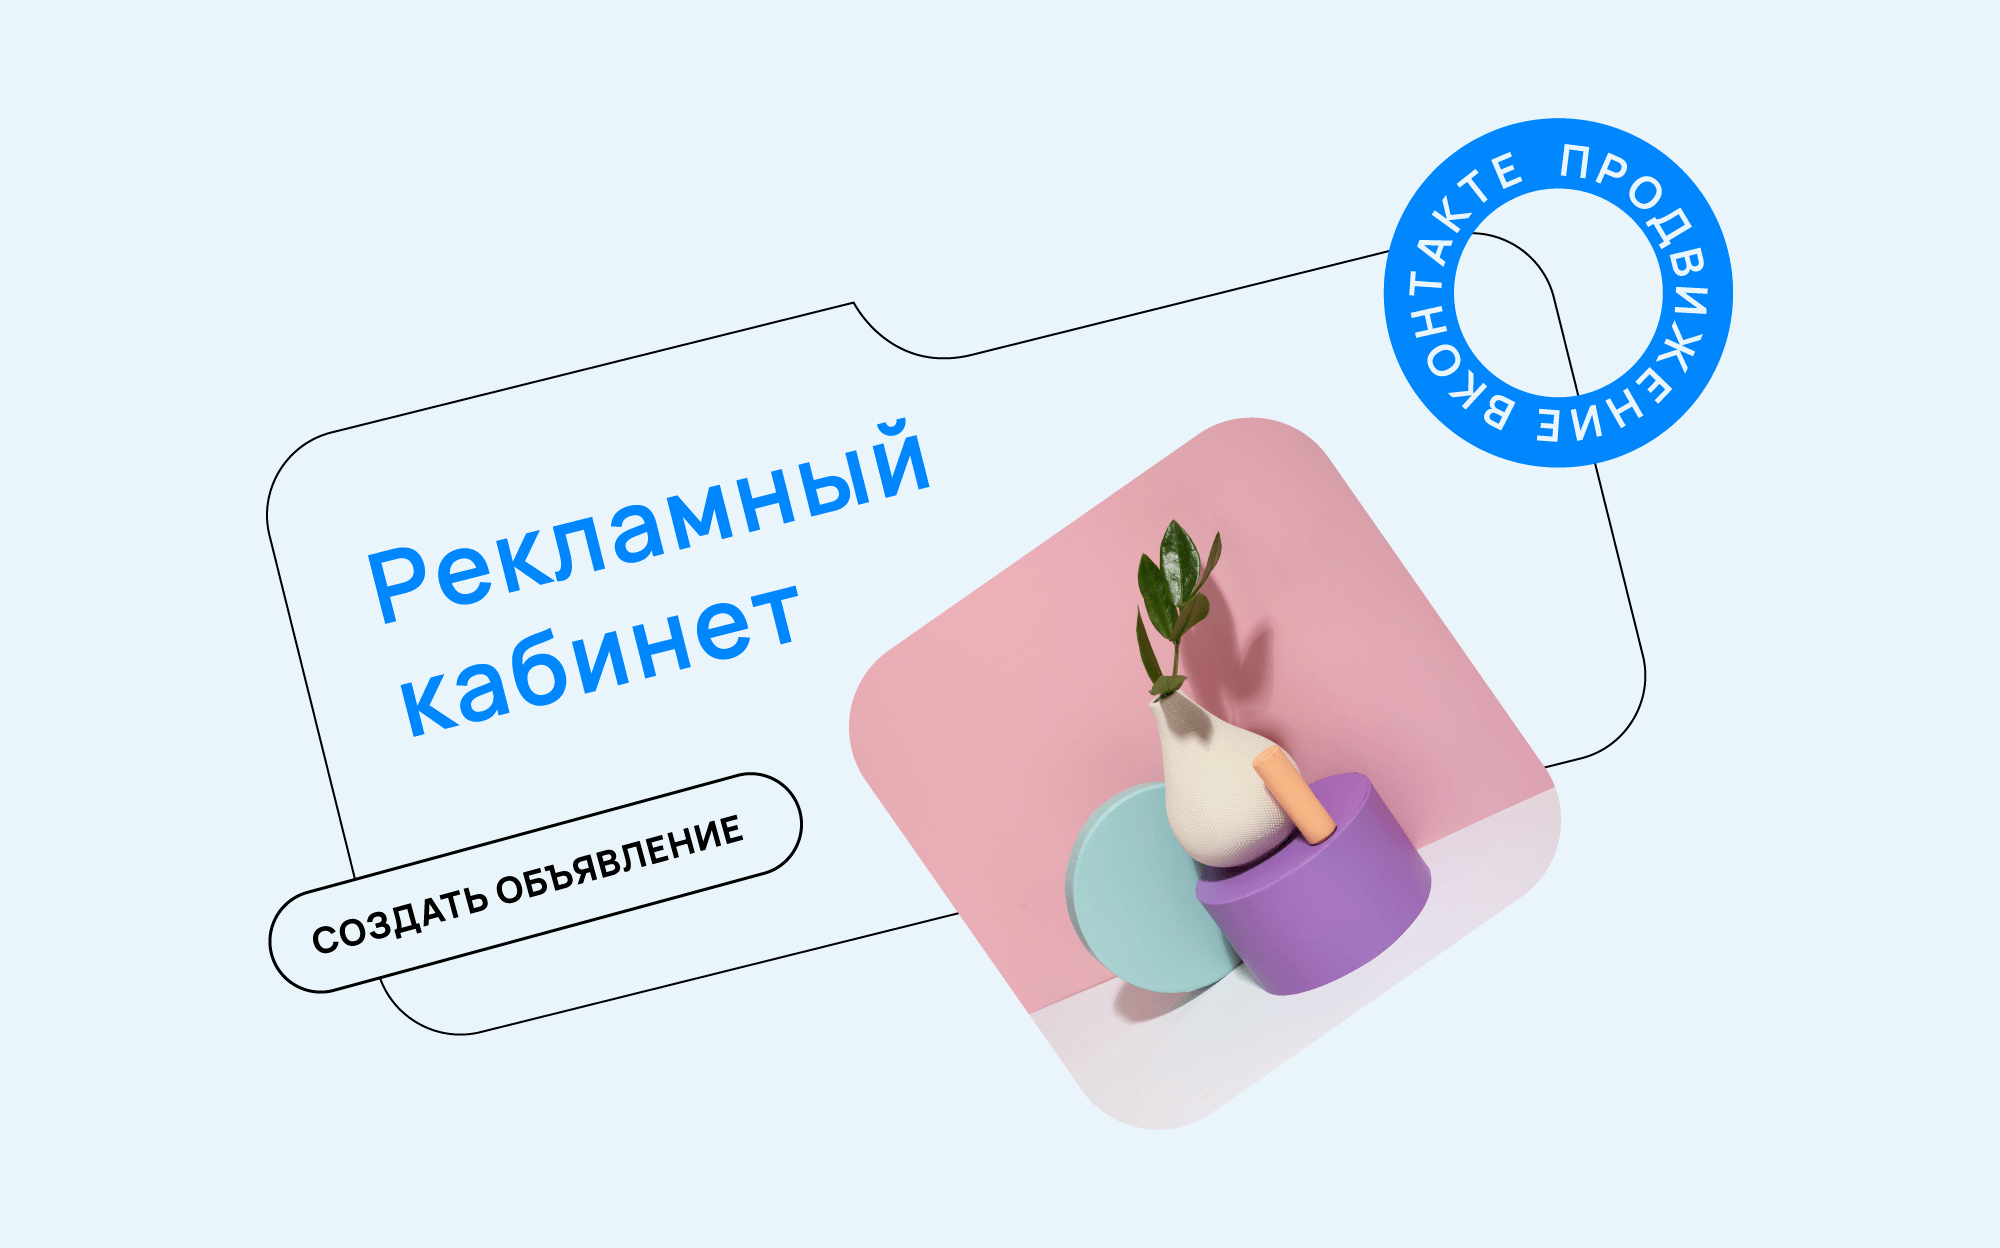 Как продвигать бизнес ВКонтакте: бесплатные и платные методы